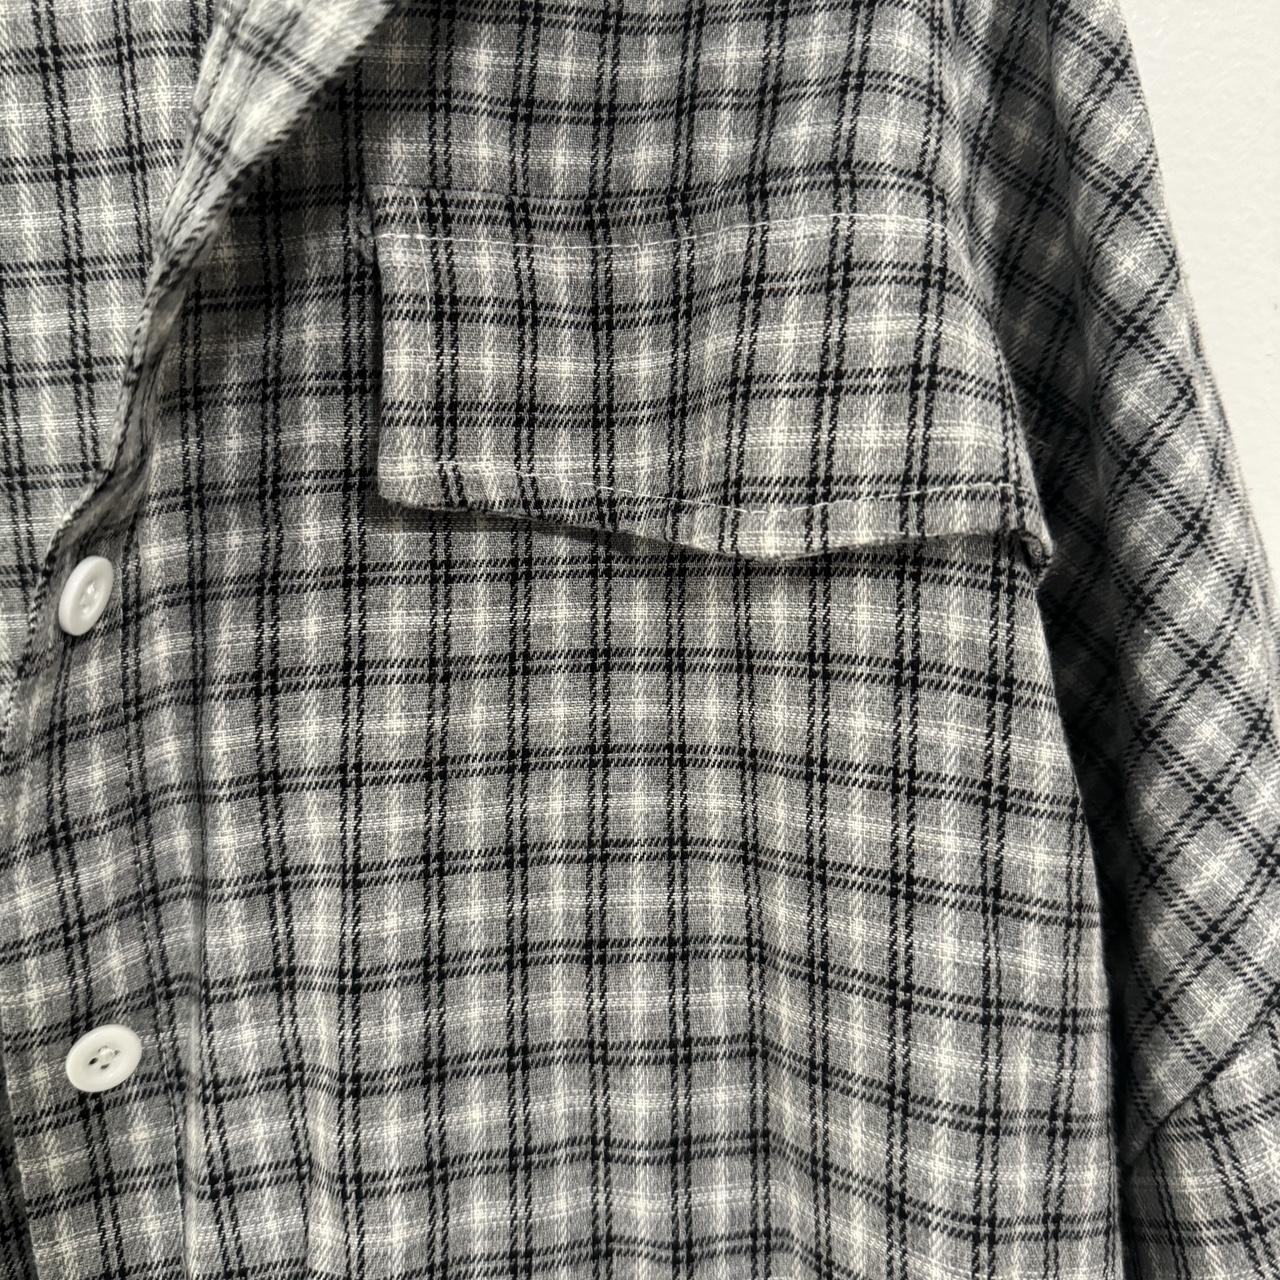 Oversized gray checkered print button down shirt... - Depop